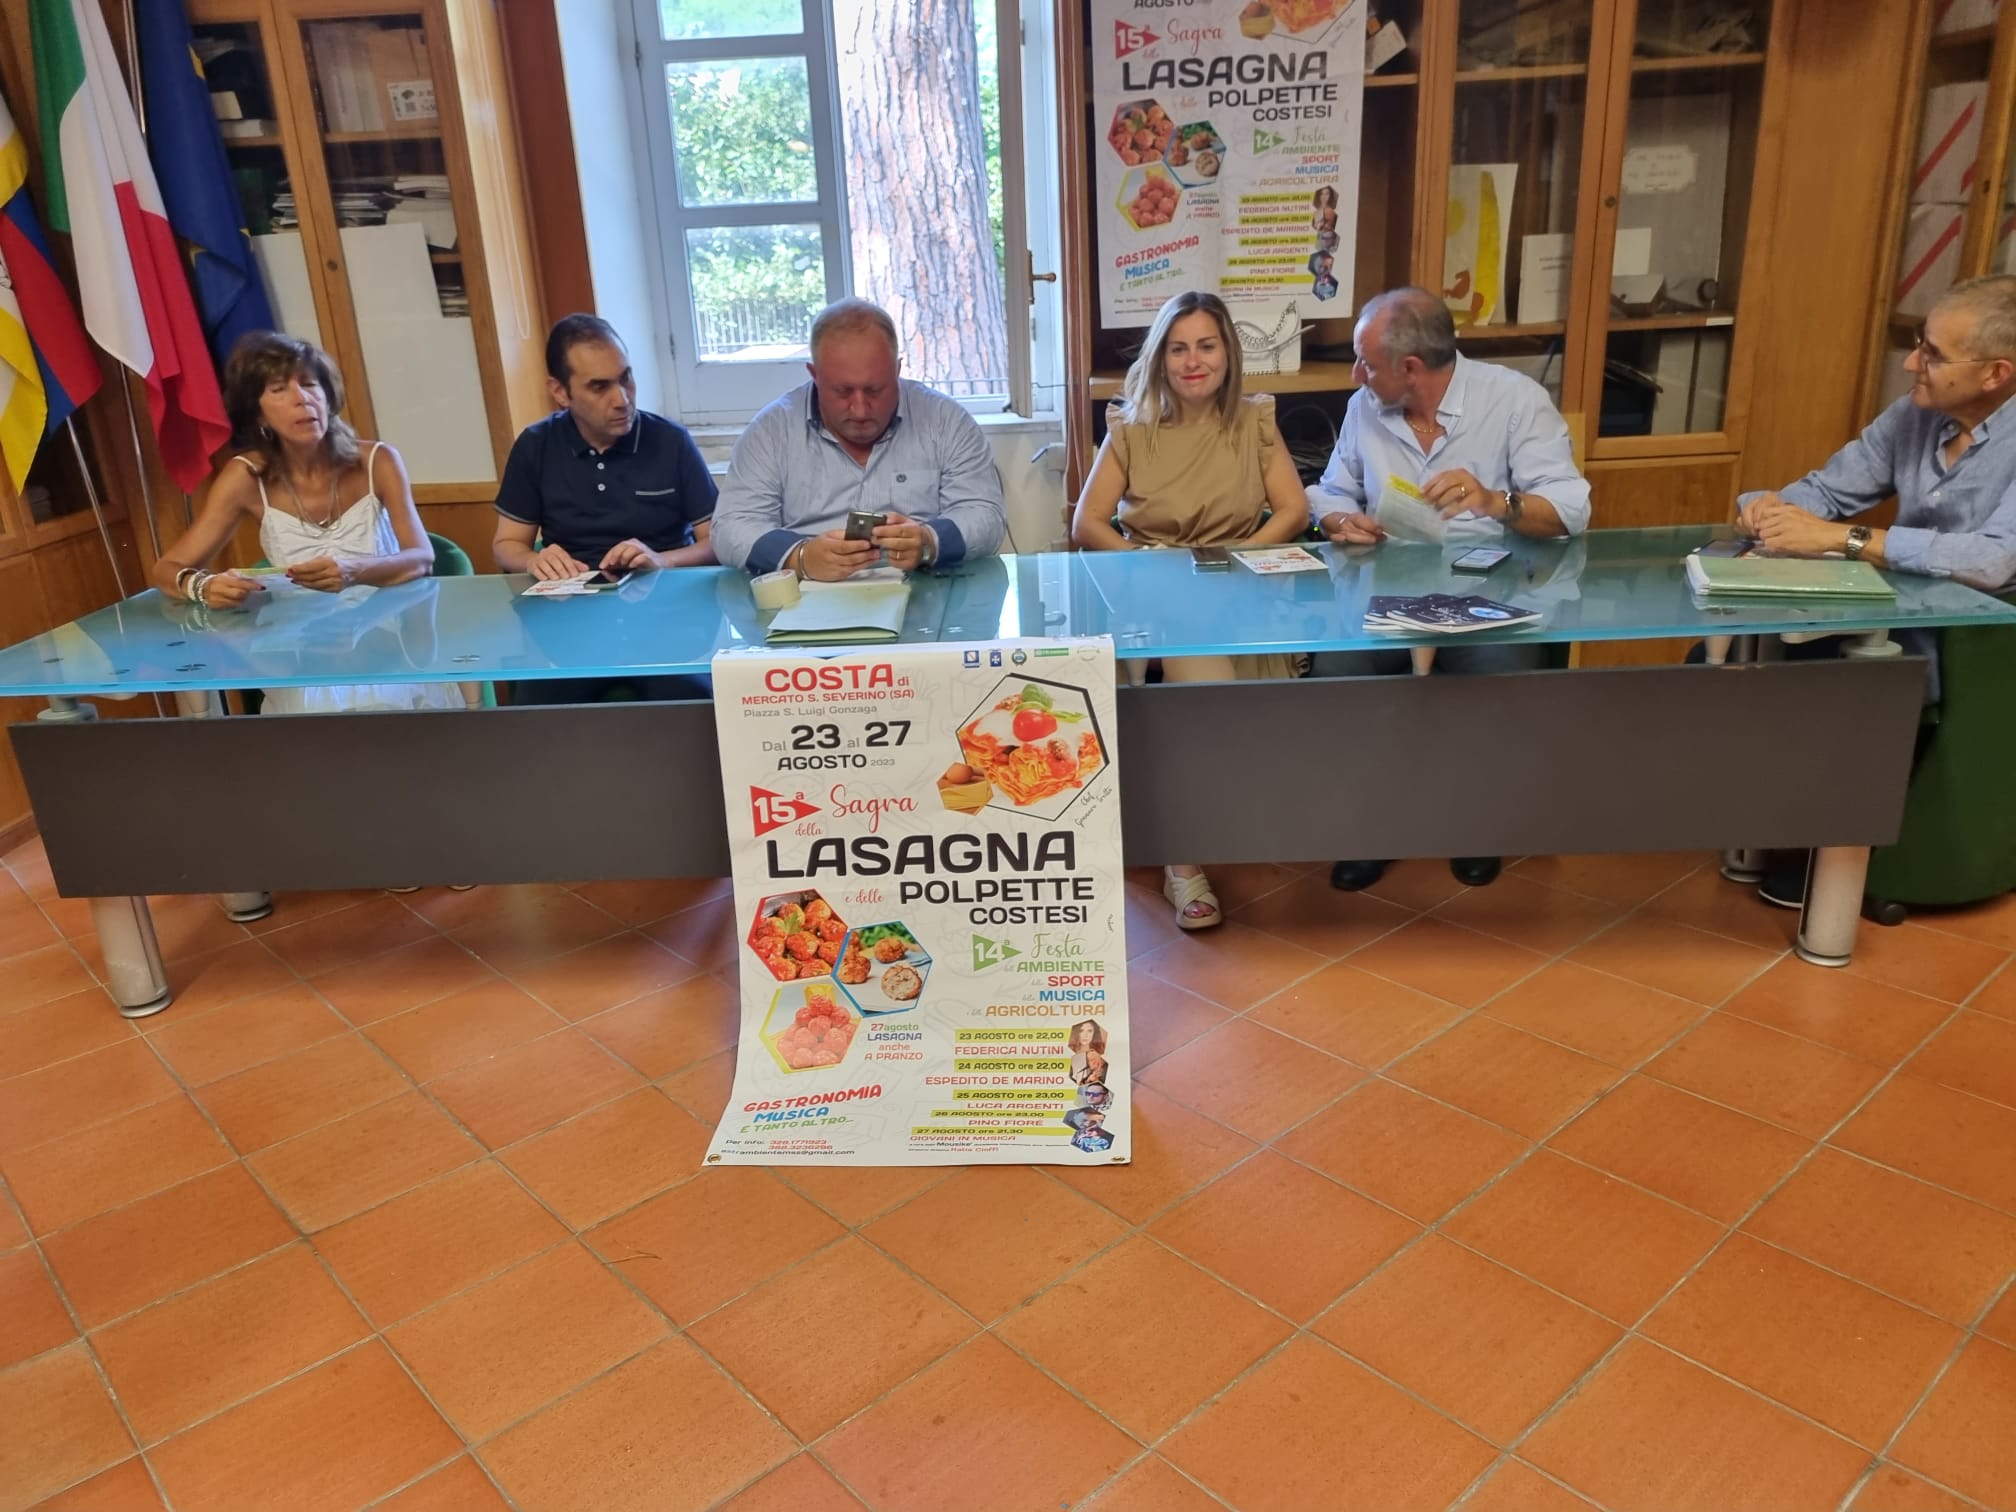 Mercato San Severino: al via XIV festa dell’Ambiente, dello Sport, della Musica e dell’Agricoltura con lasagna e polpette costesi